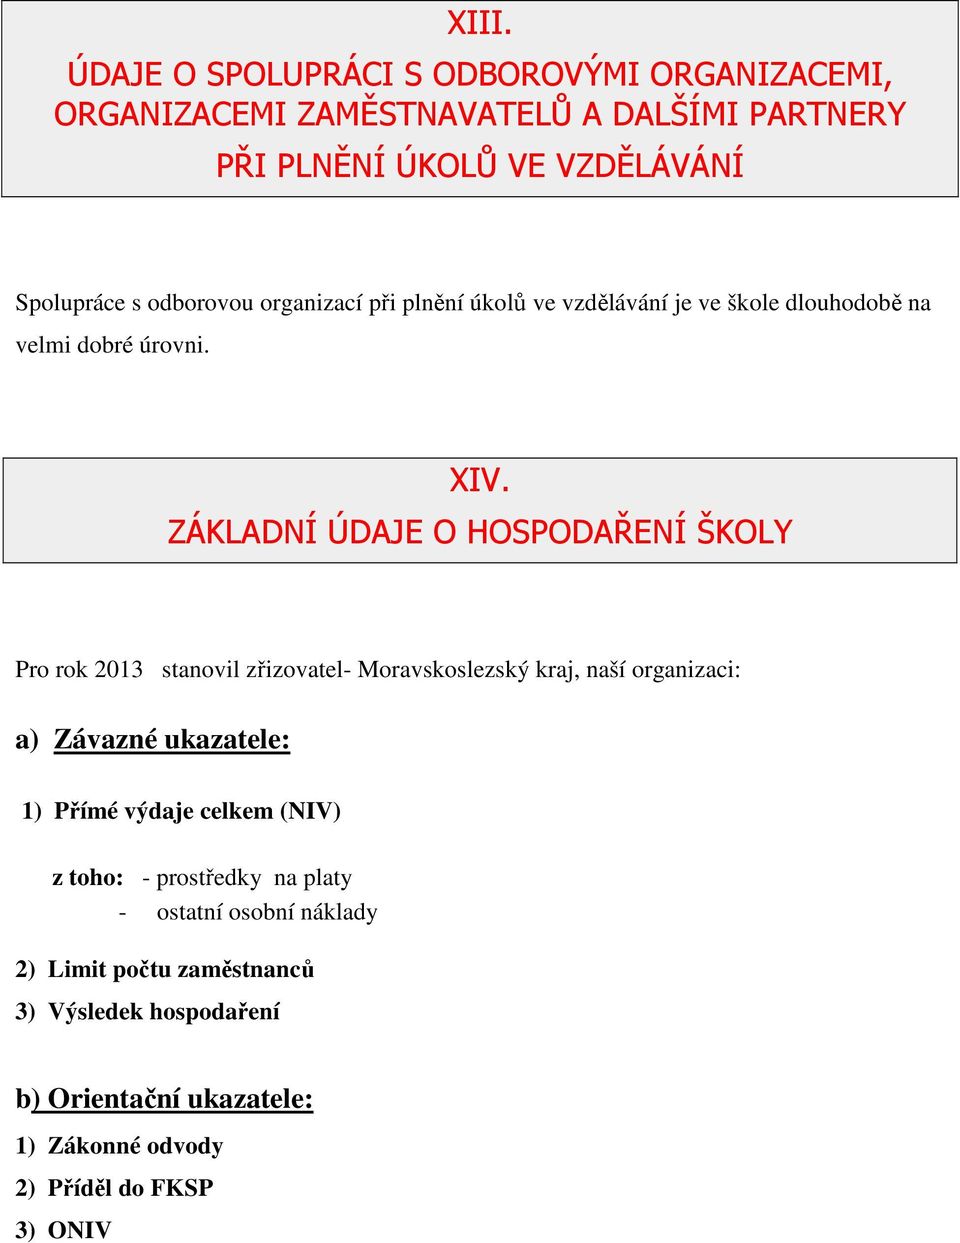 ZÁKLADNÍ ÚDAJE O HOSPODAŘENÍ ŠKOLY Pro rok 2013 stanovil zřizovatel- Moravskoslezský kraj, naší organizaci: a) Závazné ukazatele: 1) Přímé